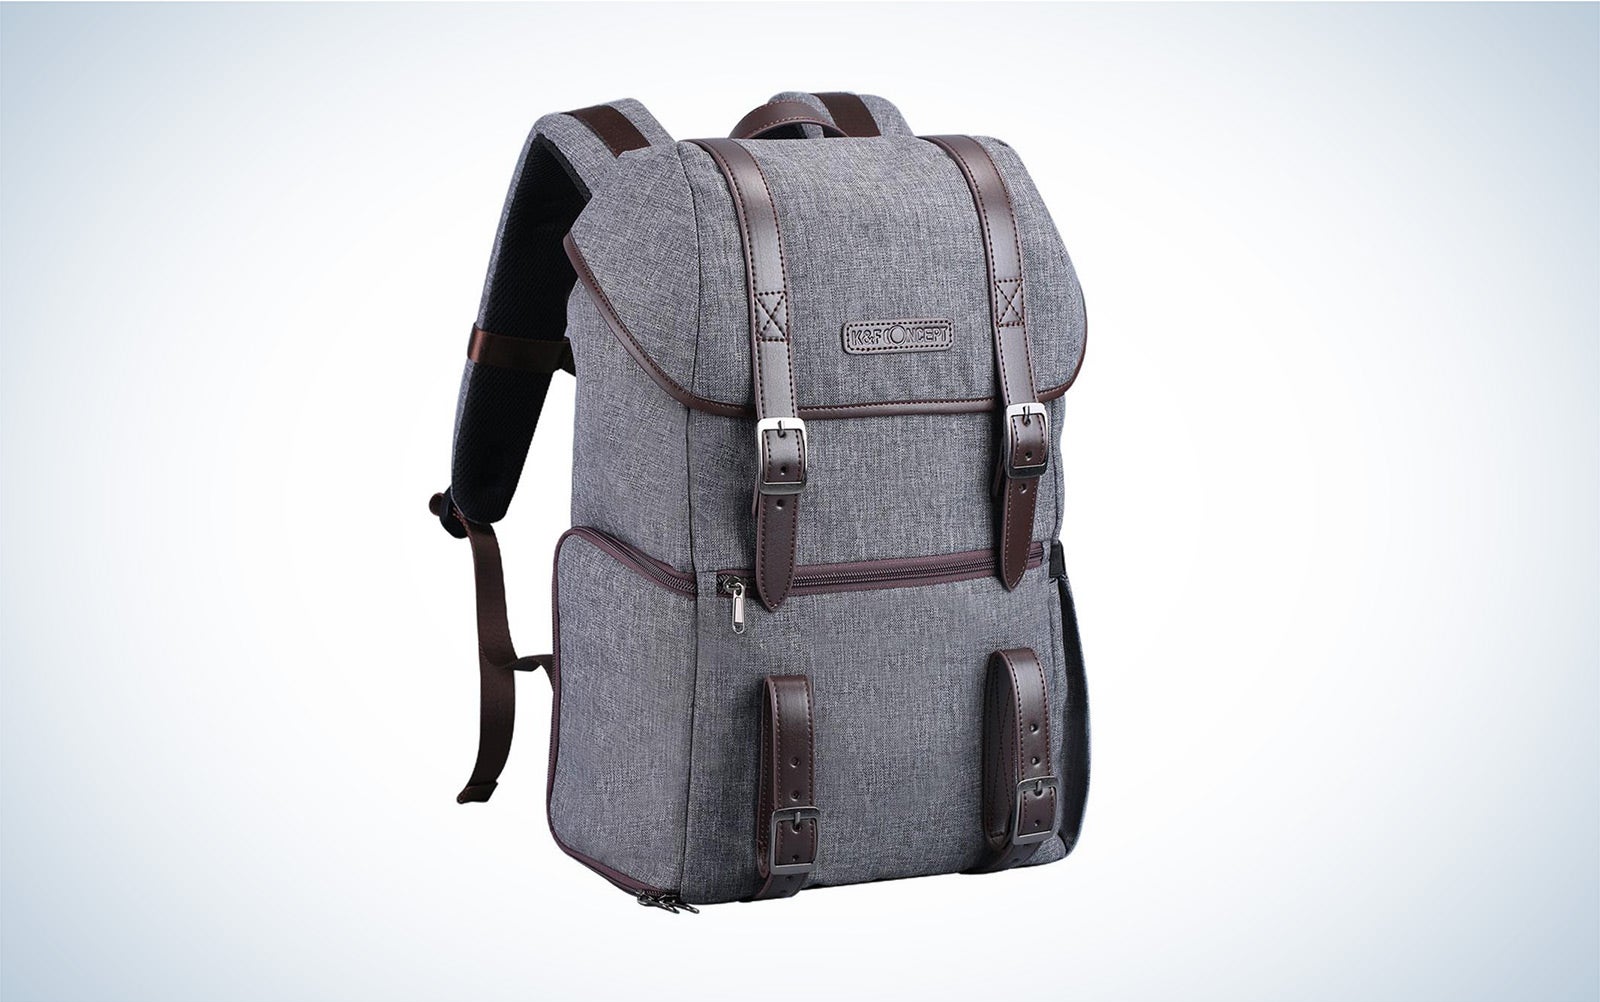 K&F Concept Large Travel Backpack